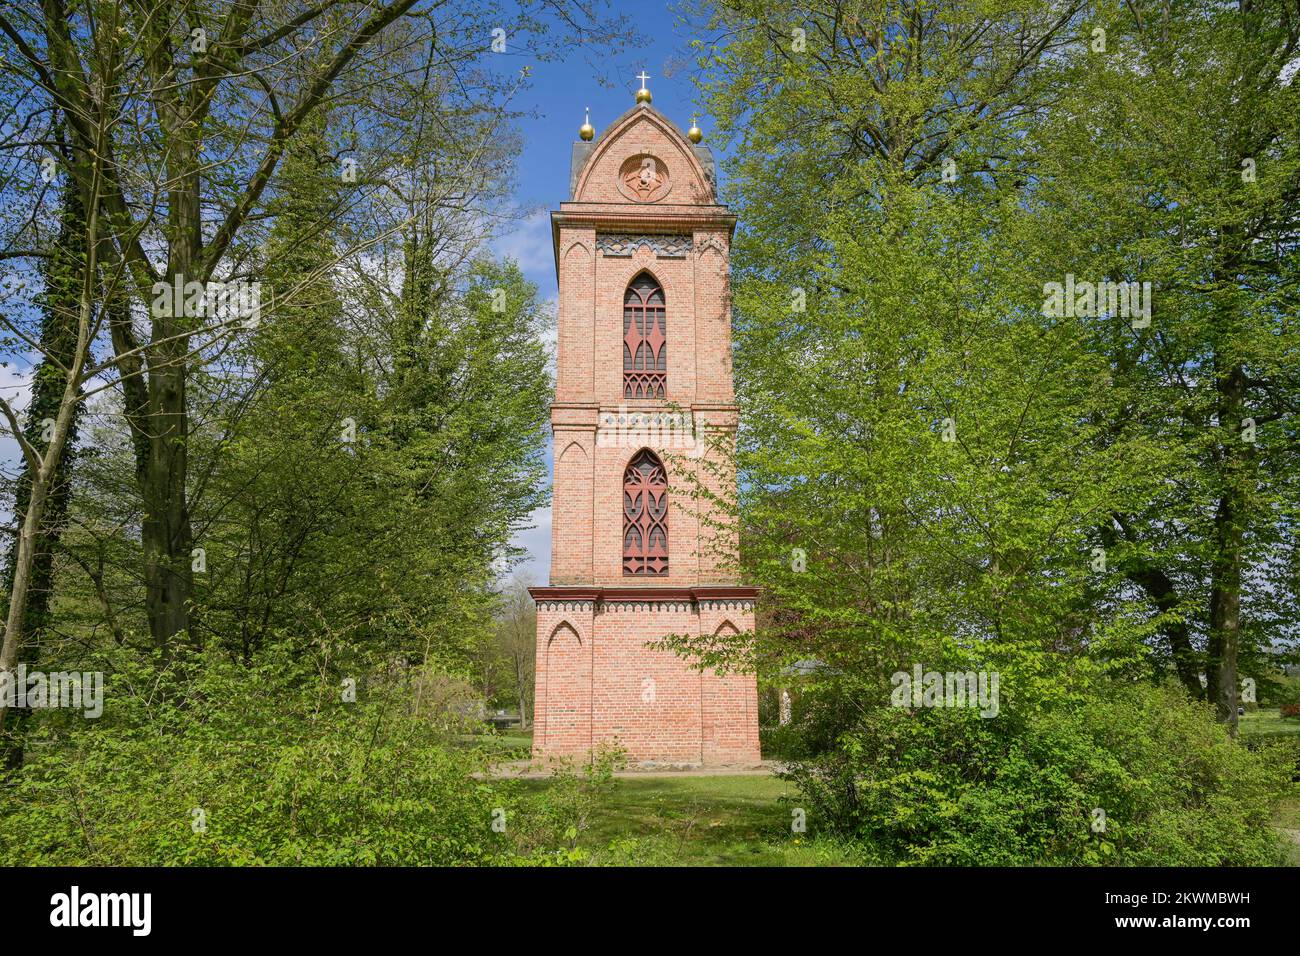 Glockenturm St. Helena, Schloßgarten, Ludwigslust, Mecklenburg-Vorpommern, Deutschland Stock Photo